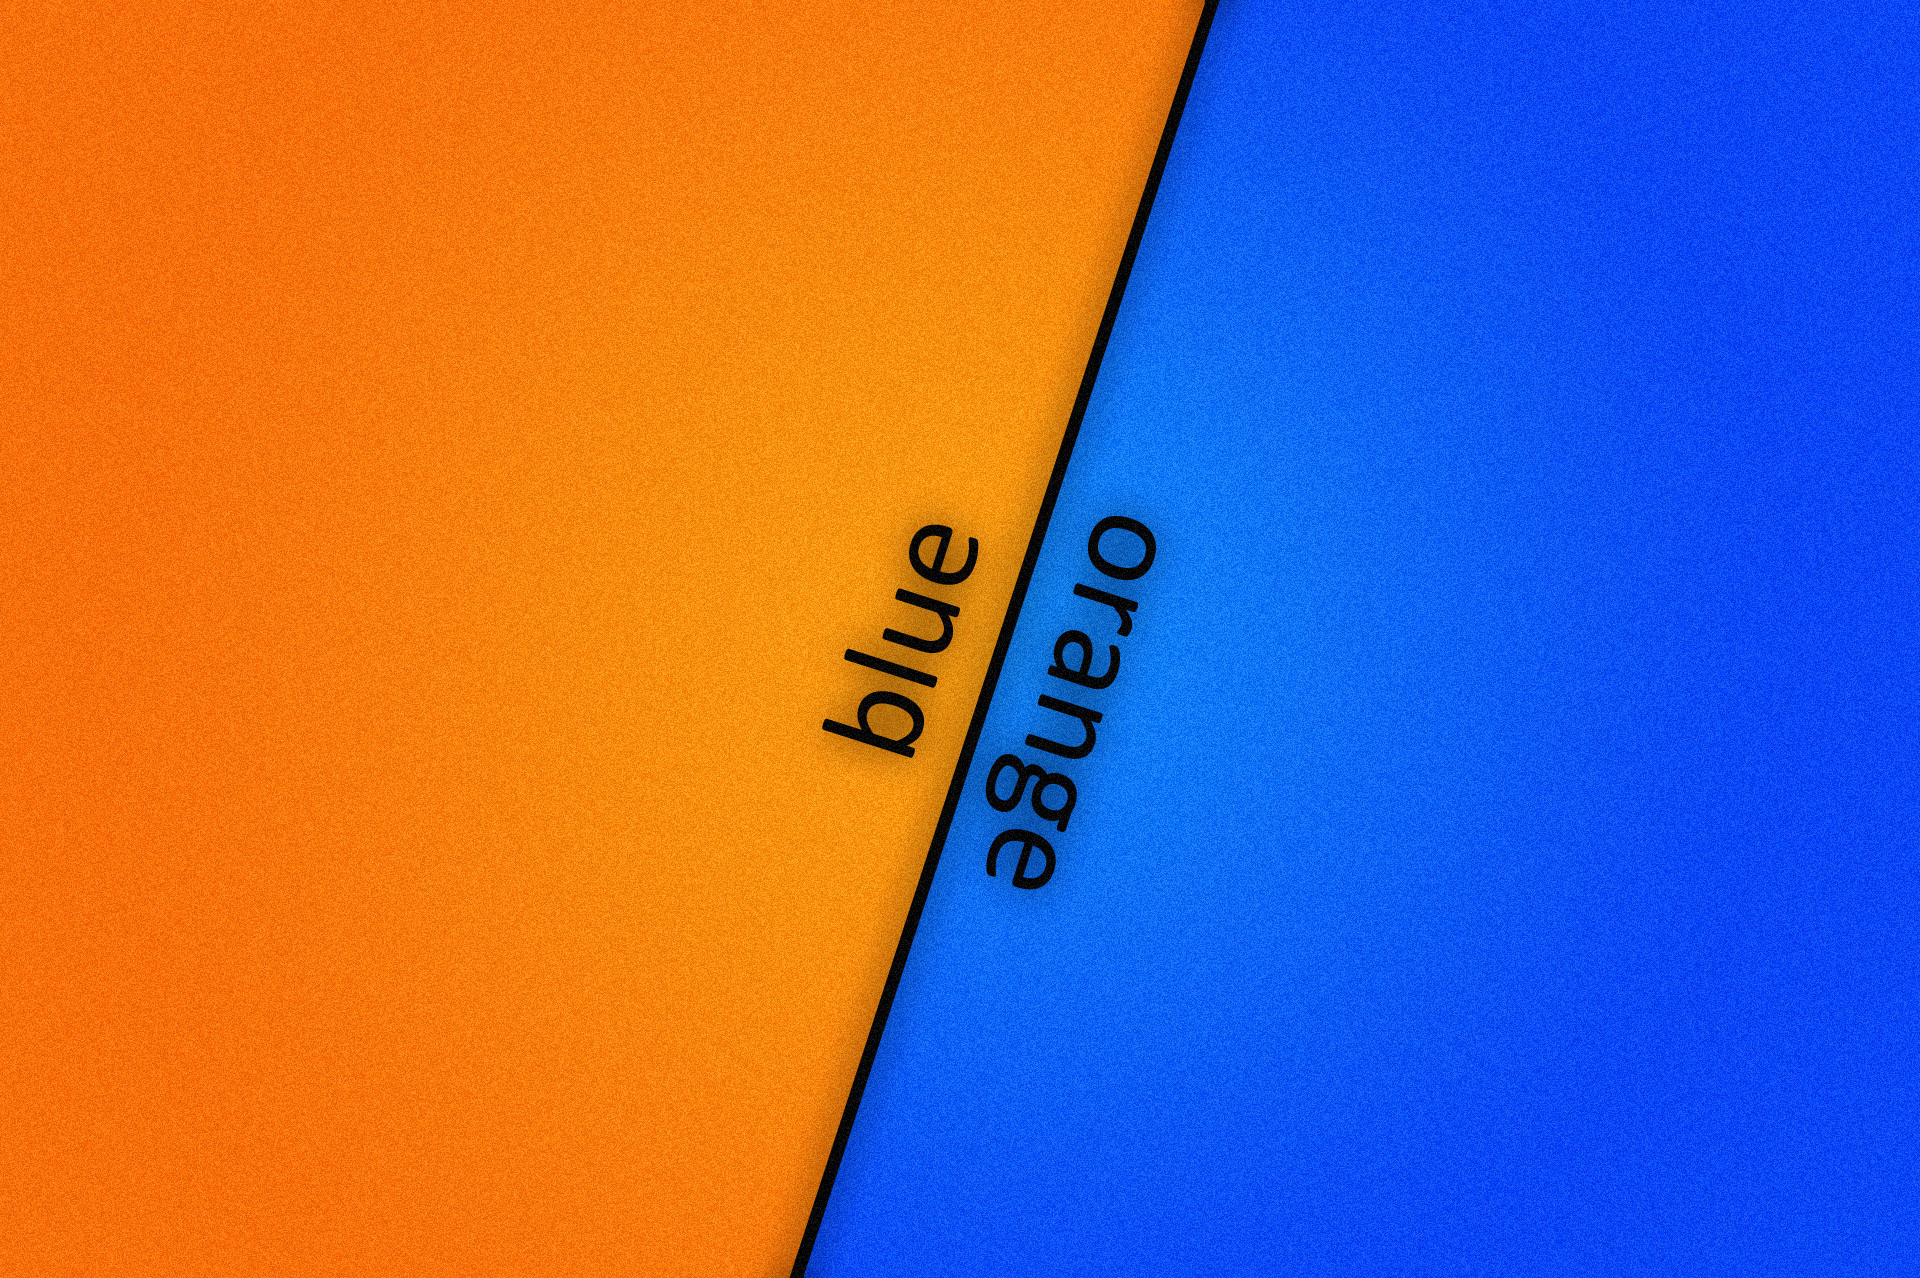 블루와 오렌지 벽지,푸른,노랑,주황색,본문,짙은 청록색